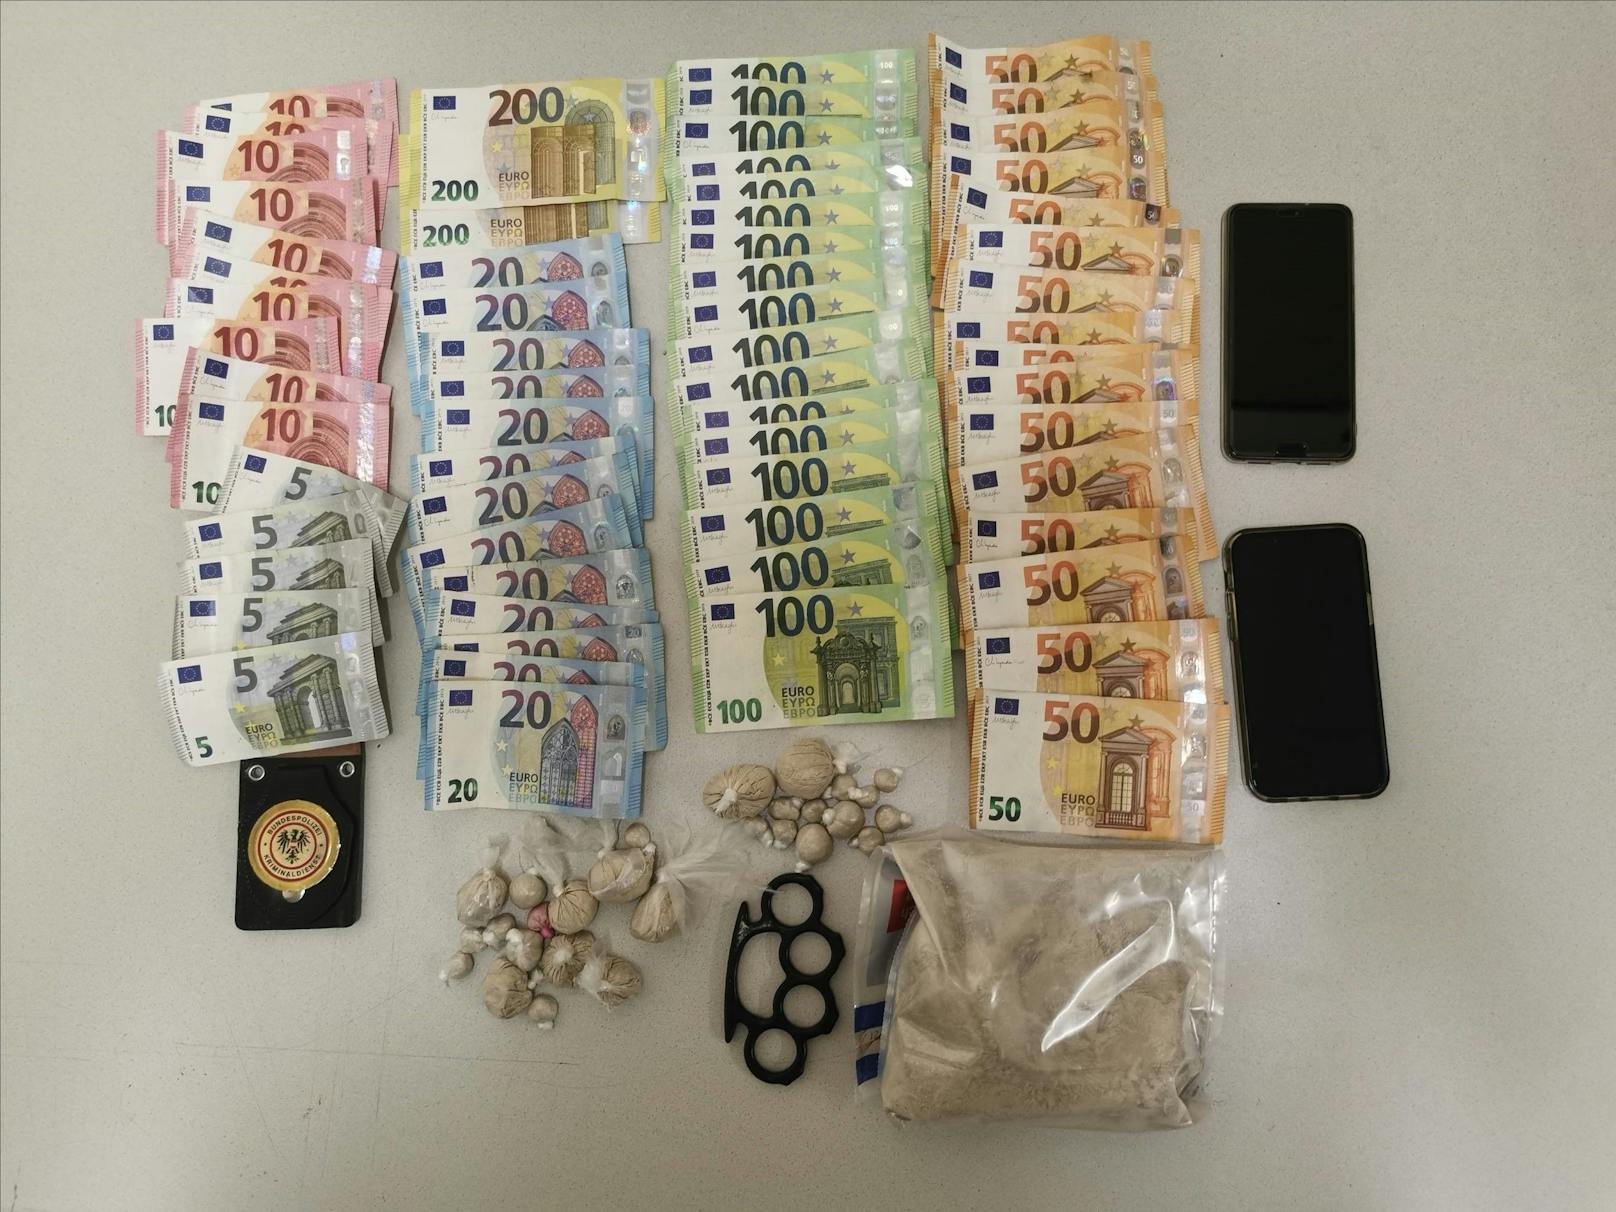 Die Ermittler stellten bei ihm große Mengen an Heroin, einen Schlagring und Bargeld in Höhe von insgesamt 3.450 Euro sicher..